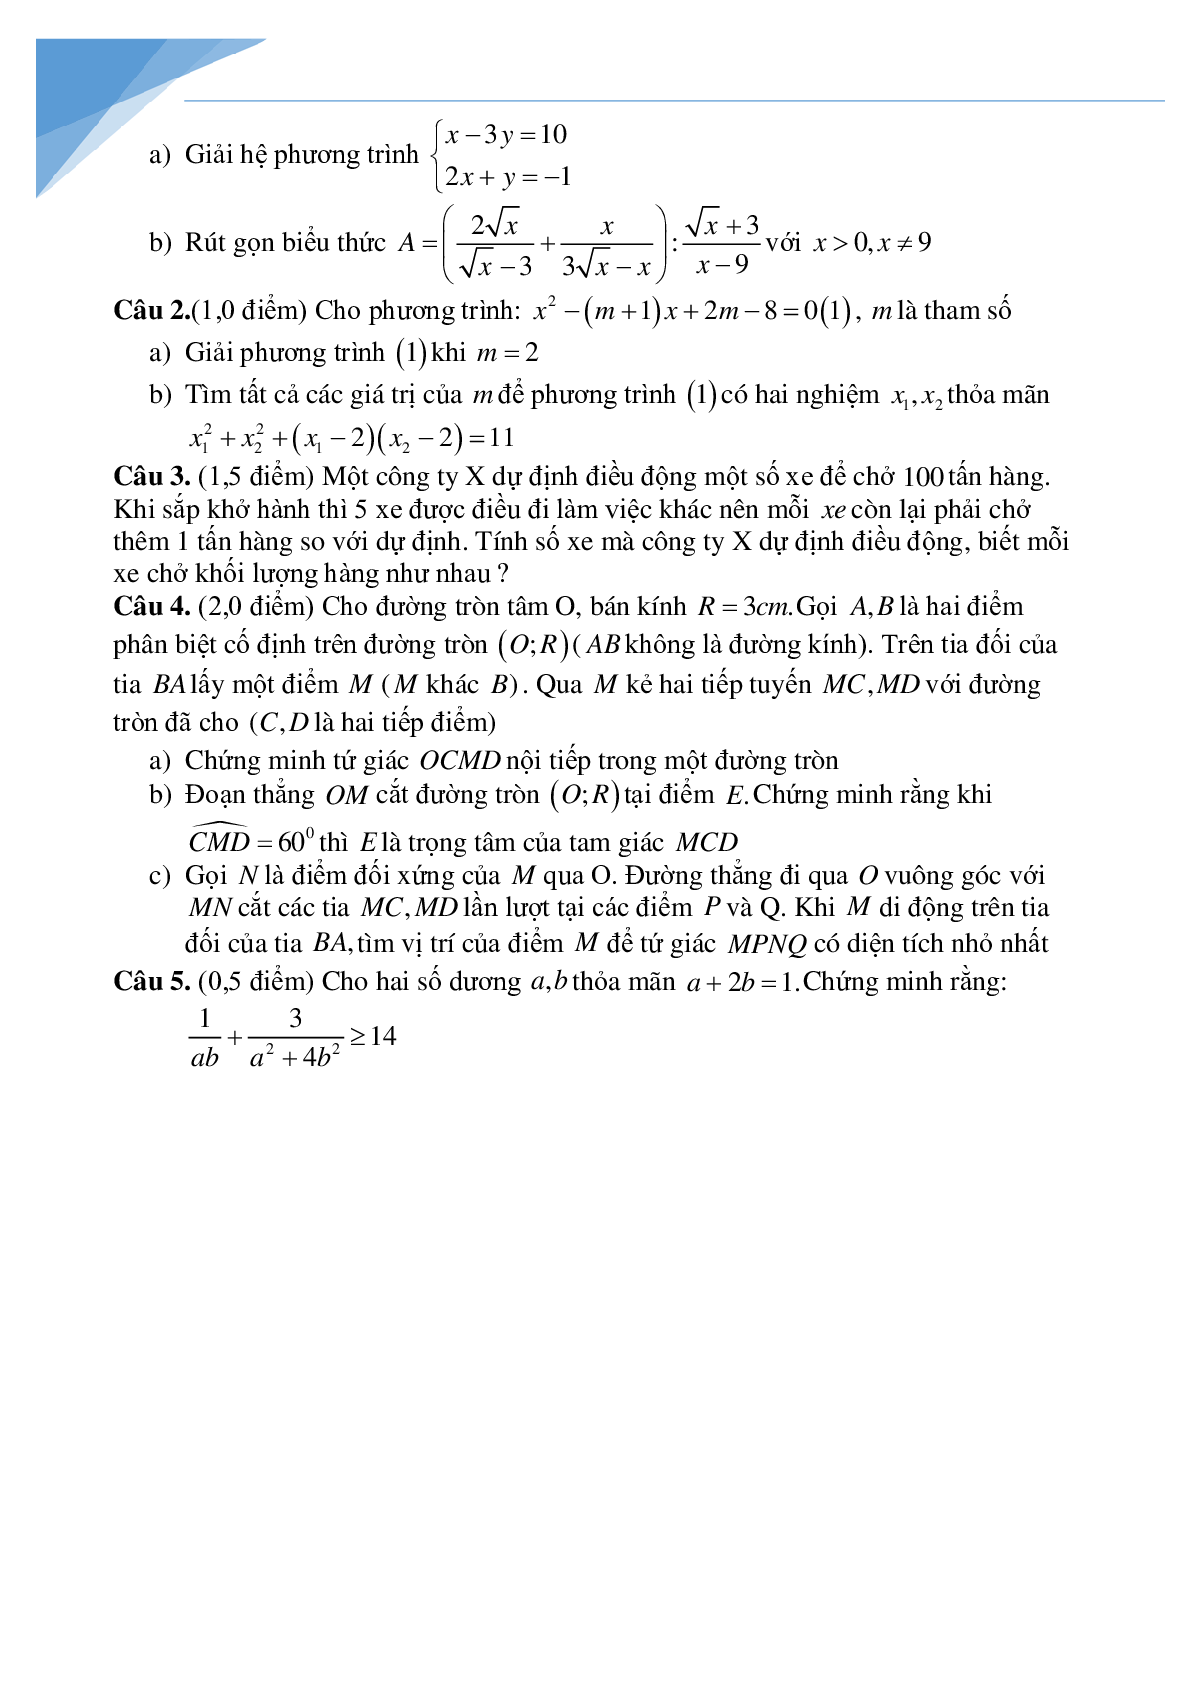 Bộ đề toán vào lớp 10 tỉnh Bắc Giang (trang 3)